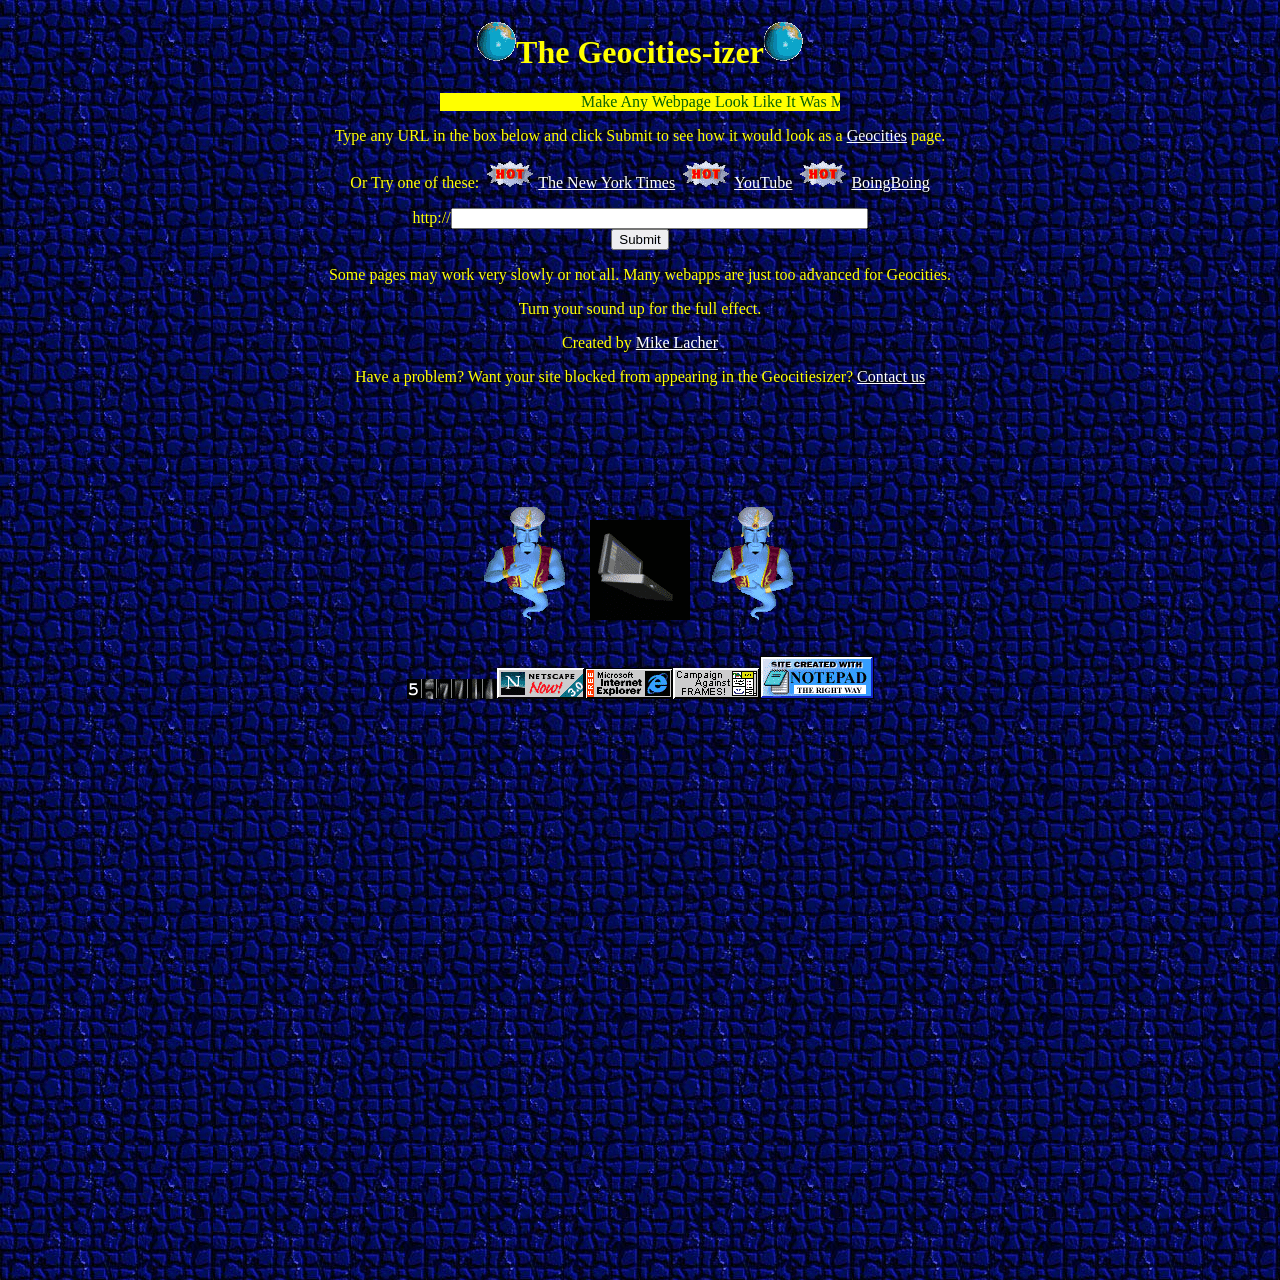 Screenshot of The Geocities-izer website